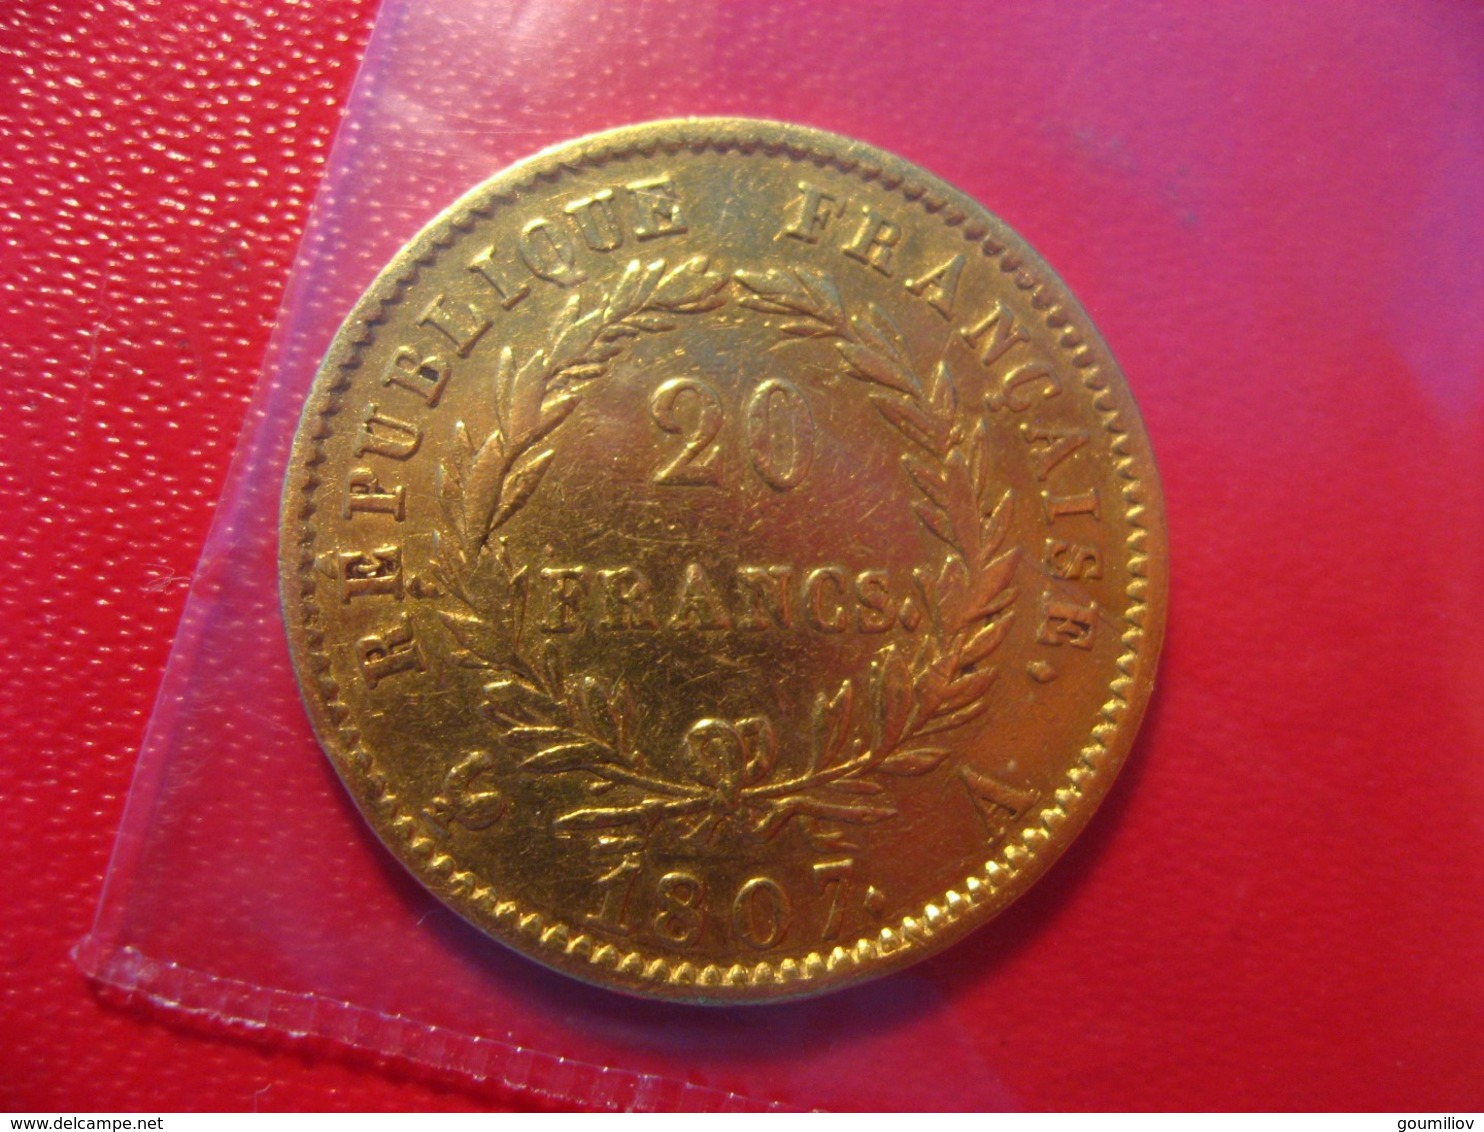 Napoléon Ier - 20 Francs 1807 A - 20 Francs (oro)